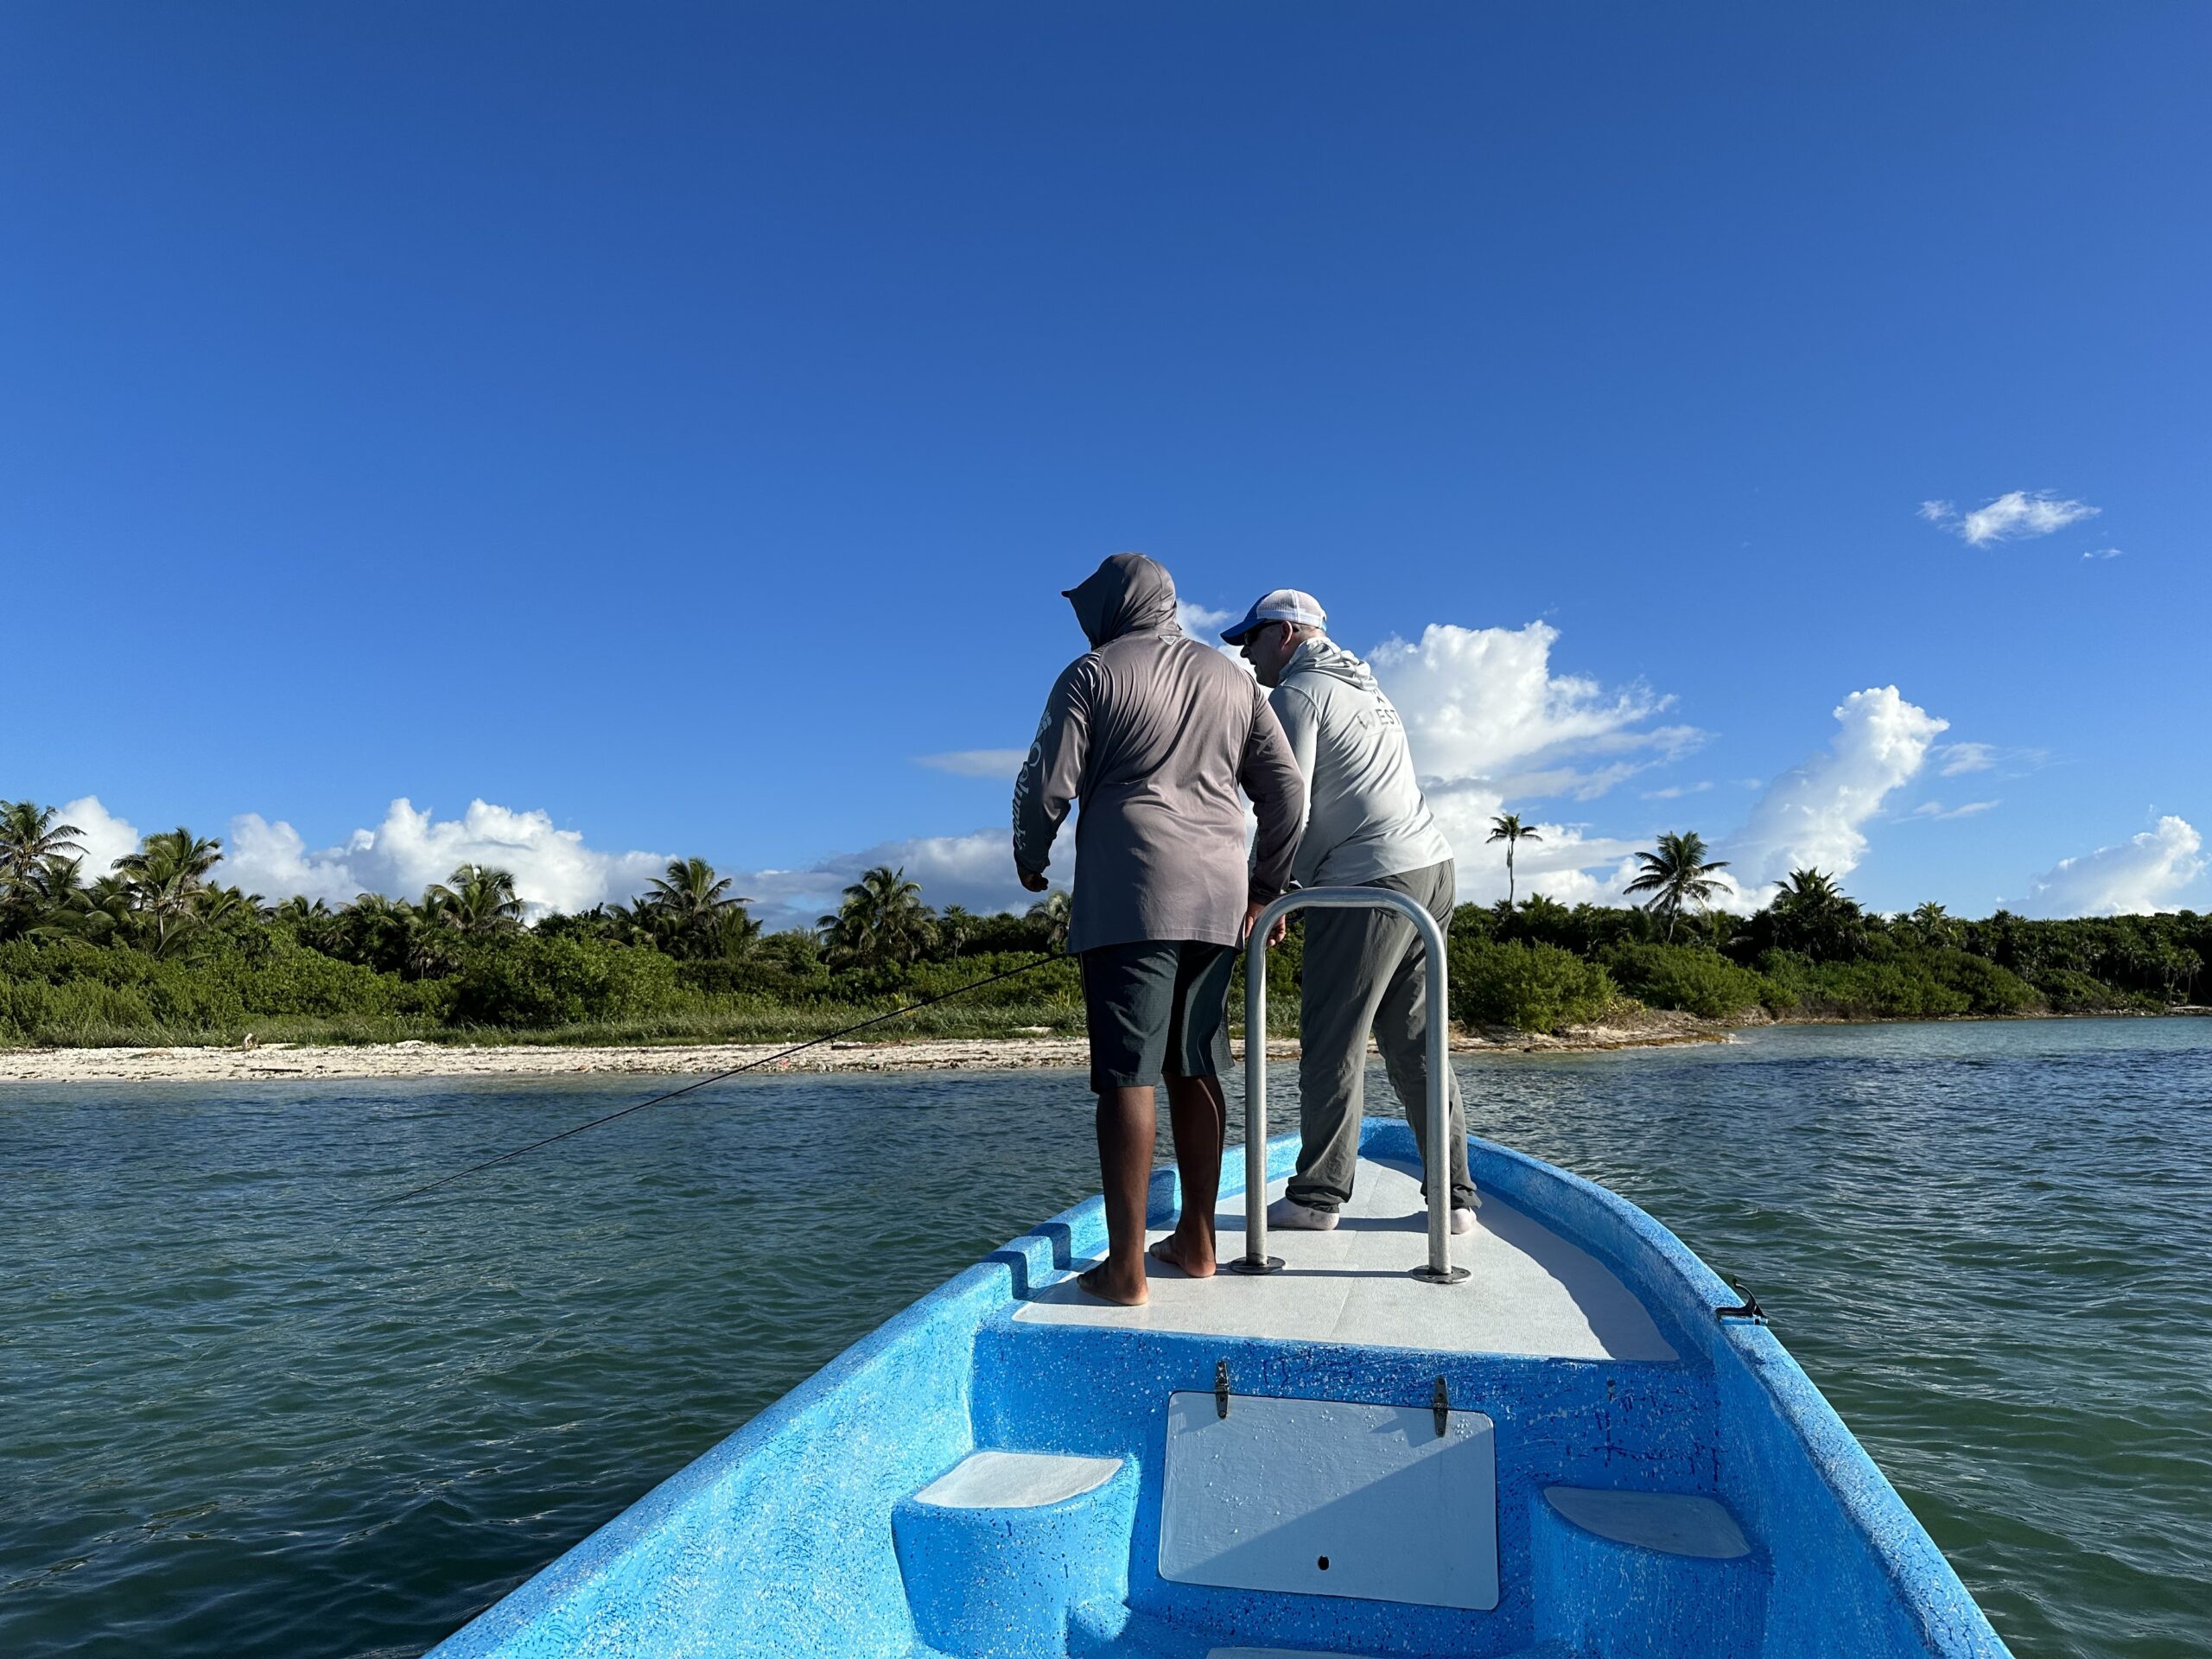 meksiko mexico ascensionbay flyfishing flugfiske perhokalastus permit tarpon bonefish kalastus perhokalastusmatka saltwaterflyfishing tropicalflyfishing kalastusmatka fishmaster globalfishing